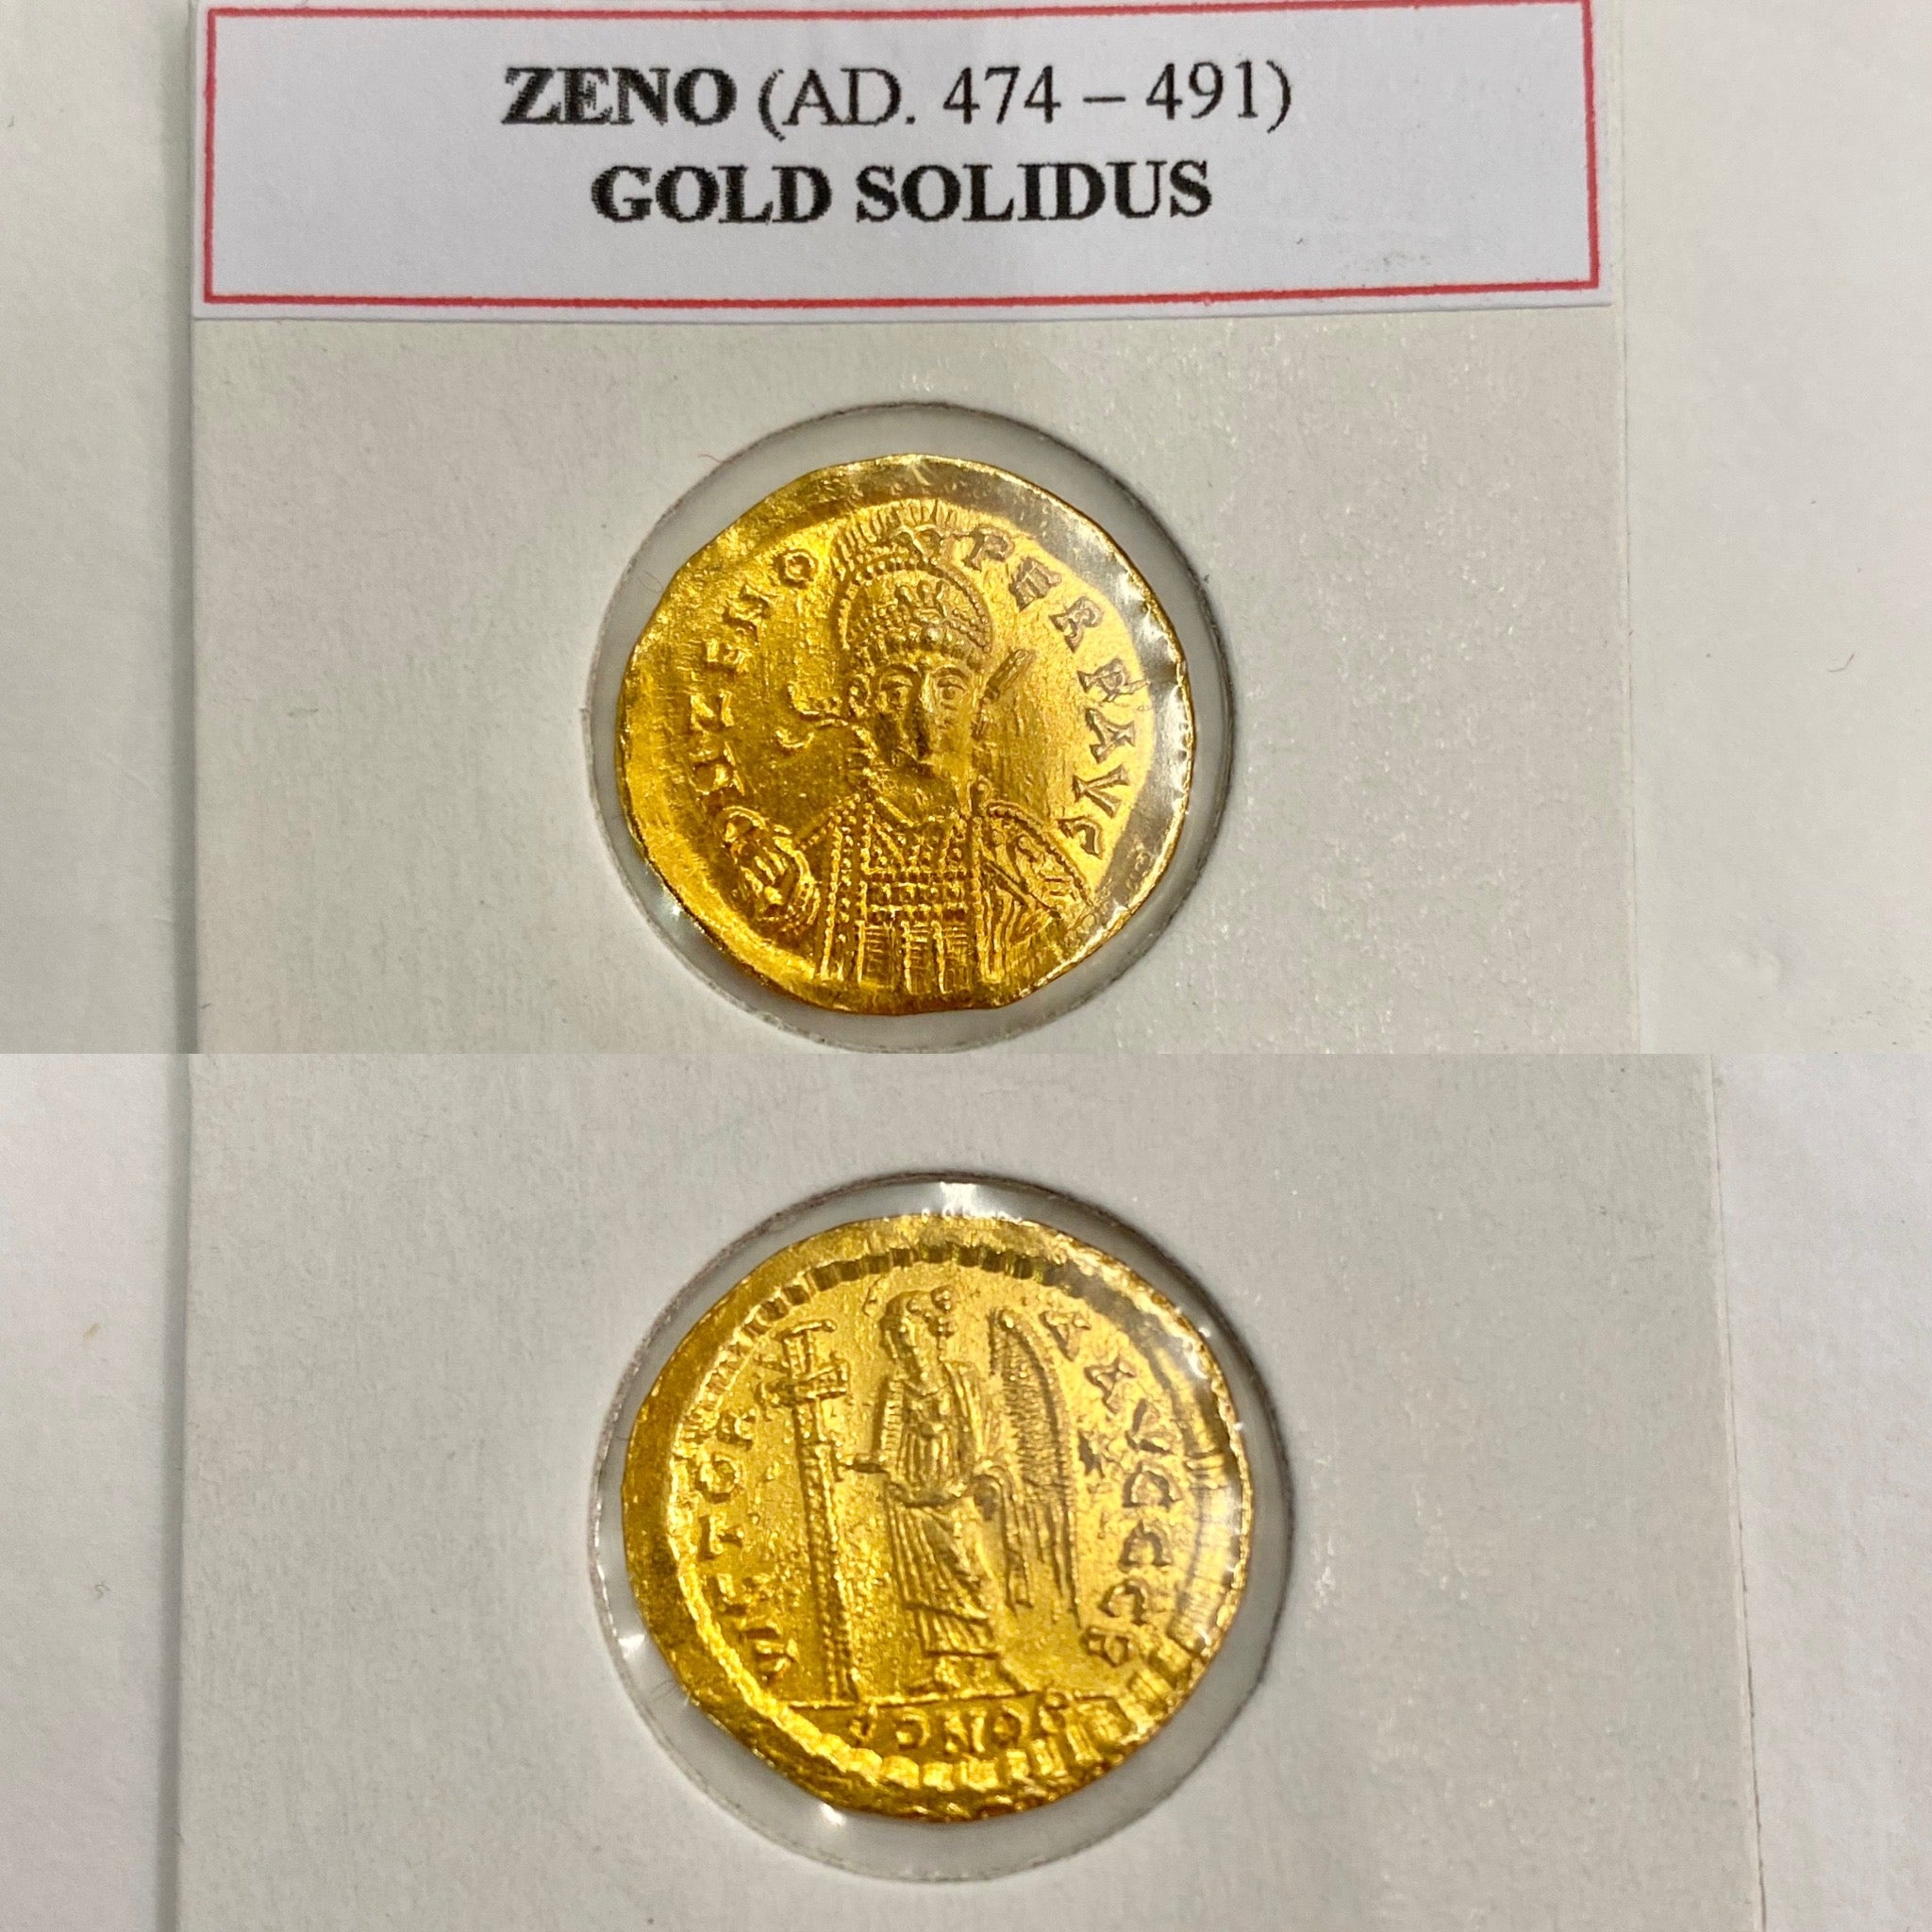 Zeno Gold Solidus AD. 474-491